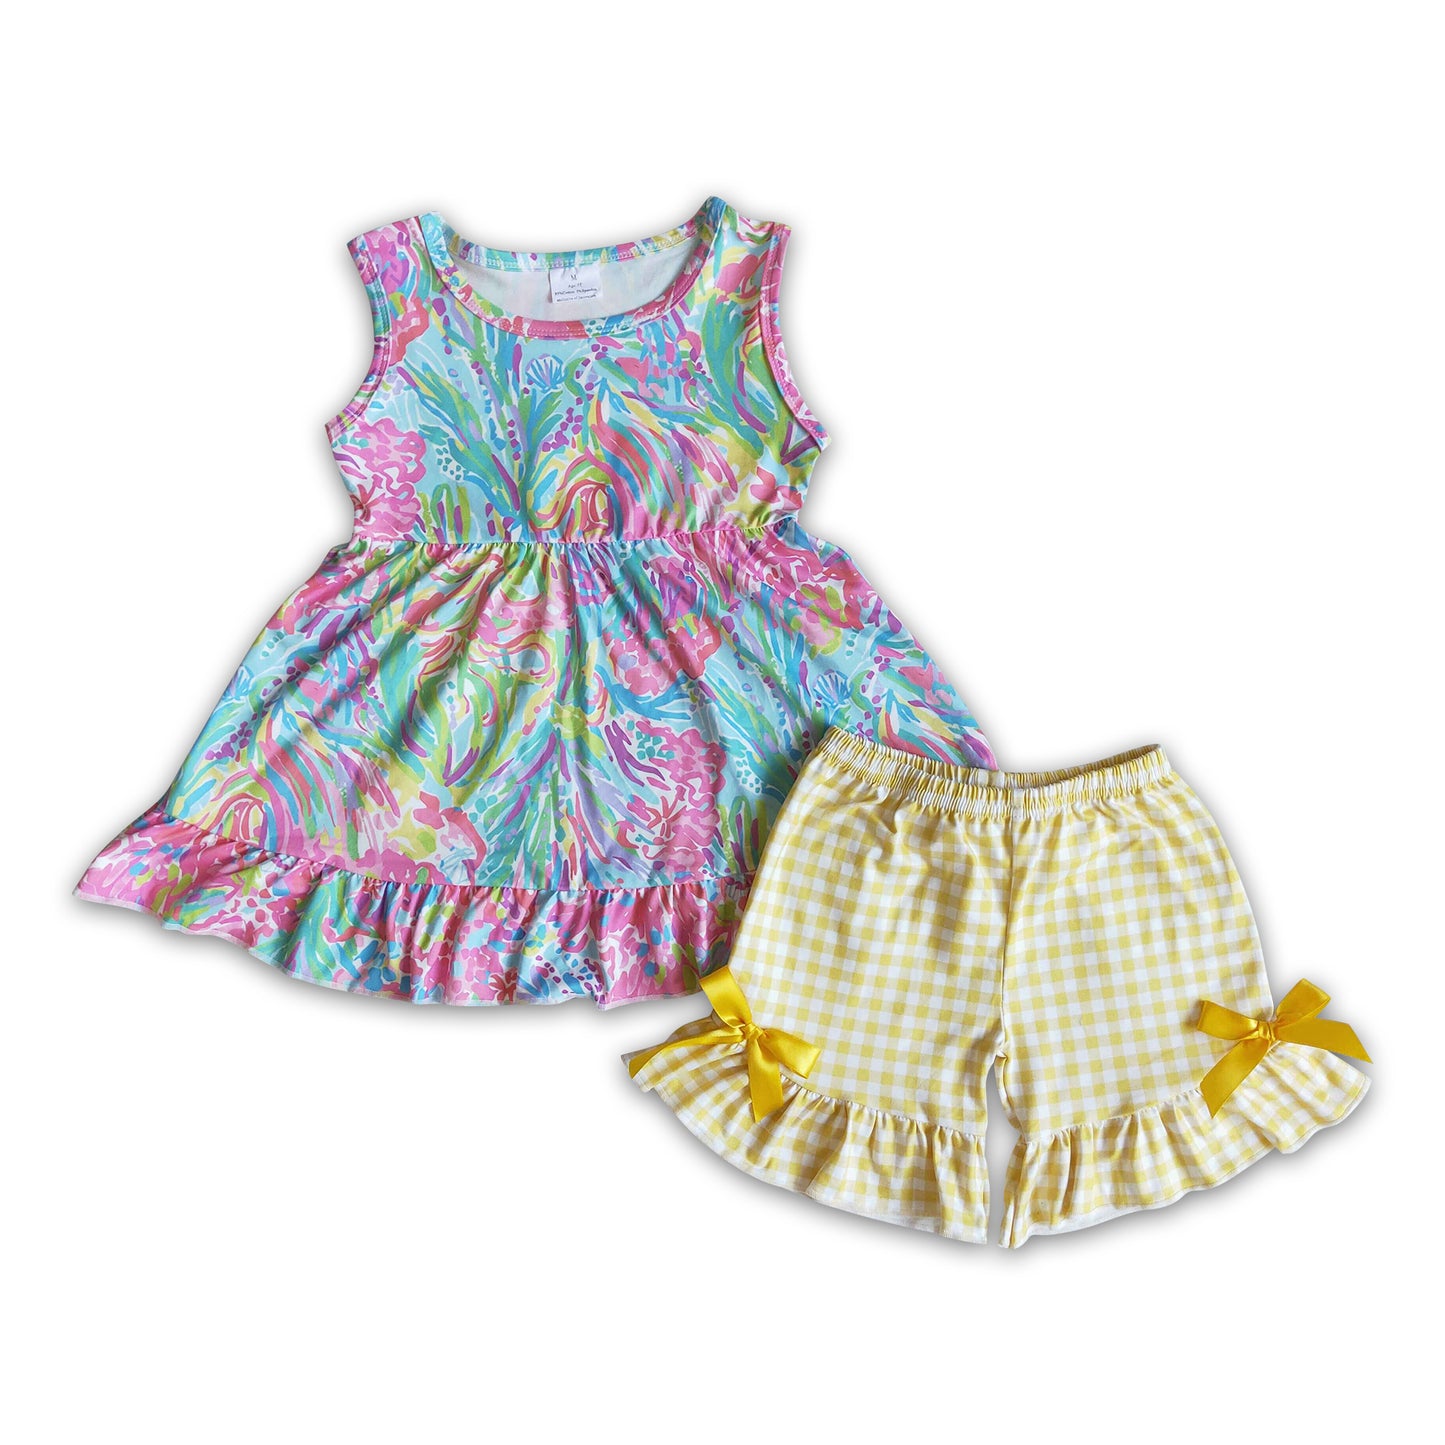 Colorful sleeveless tunic plaid shorts girls summer clothing